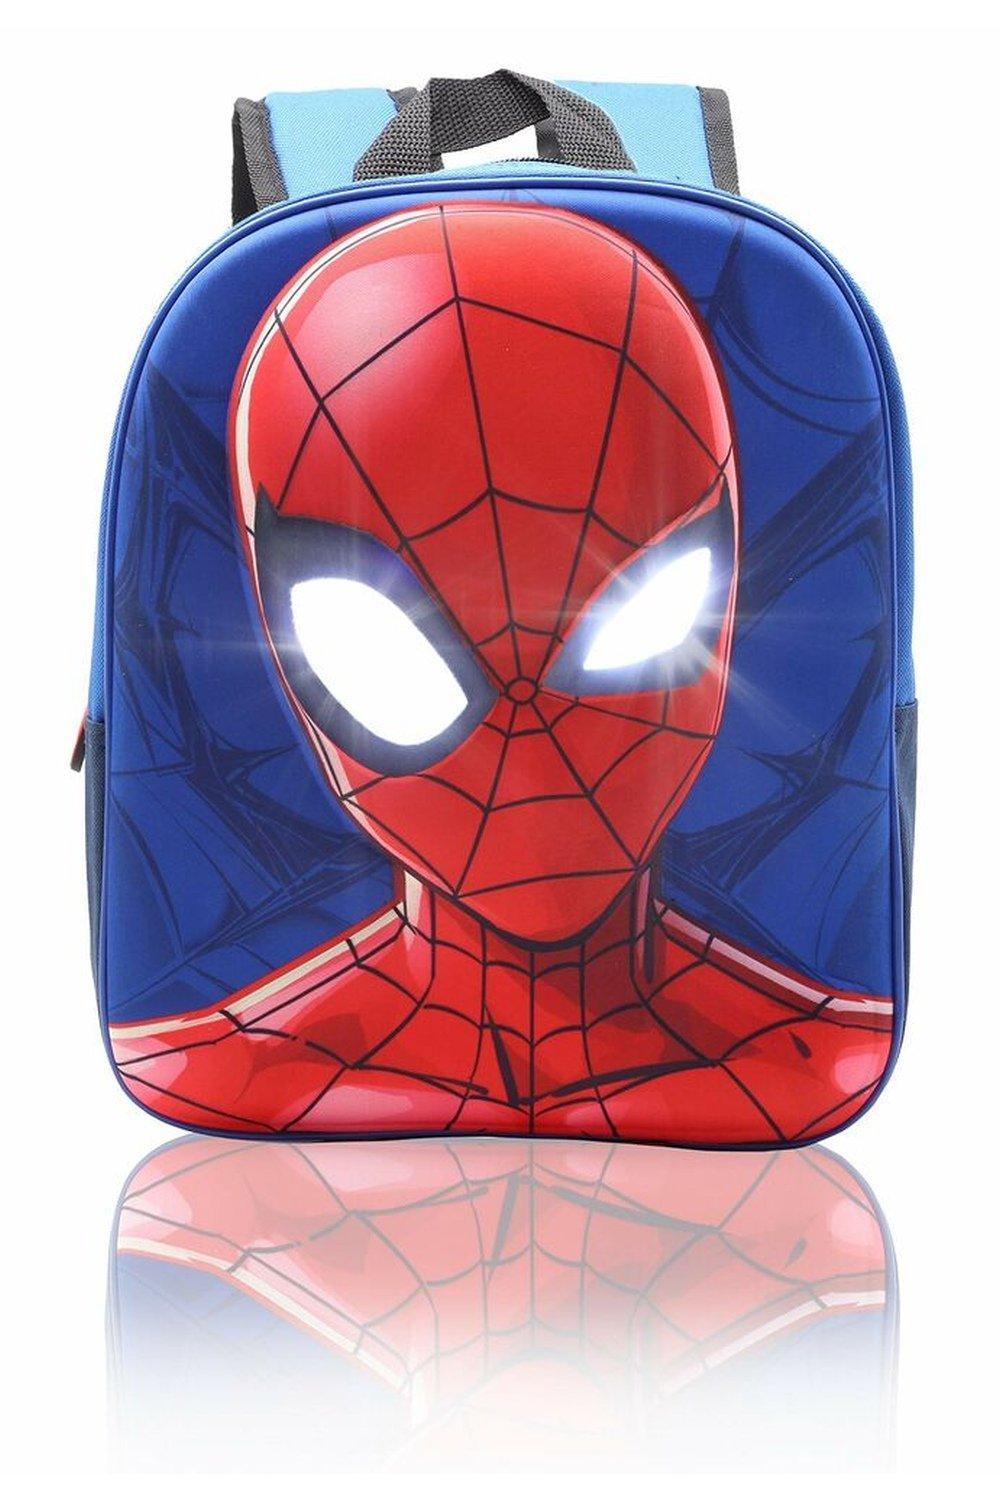 Рюкзак Человека-паука с подсветкой глаз Marvel, синий мягкая игрушка ктотик со светящимися глазами 13 см в ассортименте